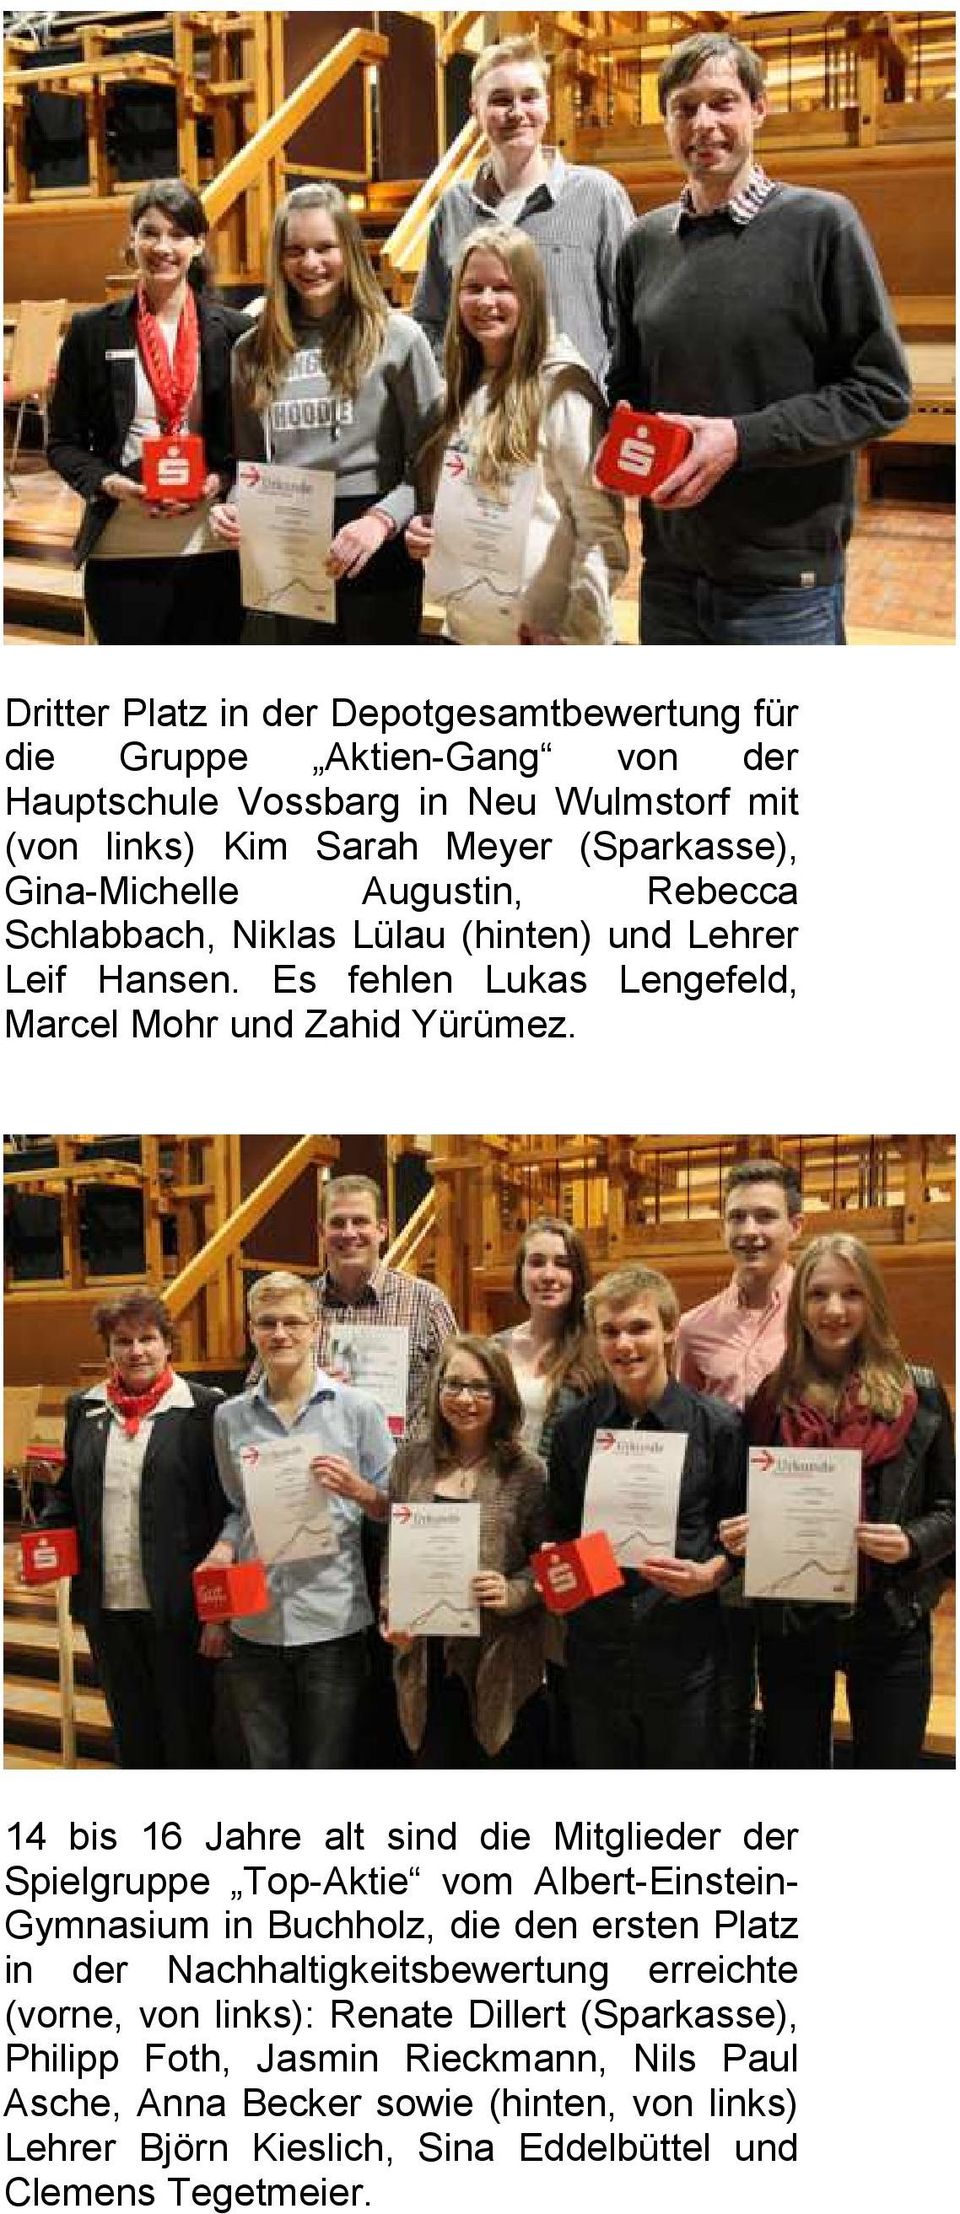 14 bis 16 Jahre alt sind die Mitglieder der Spielgruppe Top-Aktie vom Albert-Einstein- Gymnasium in Buchholz, die den ersten Platz in der Nachhaltigkeitsbewertung